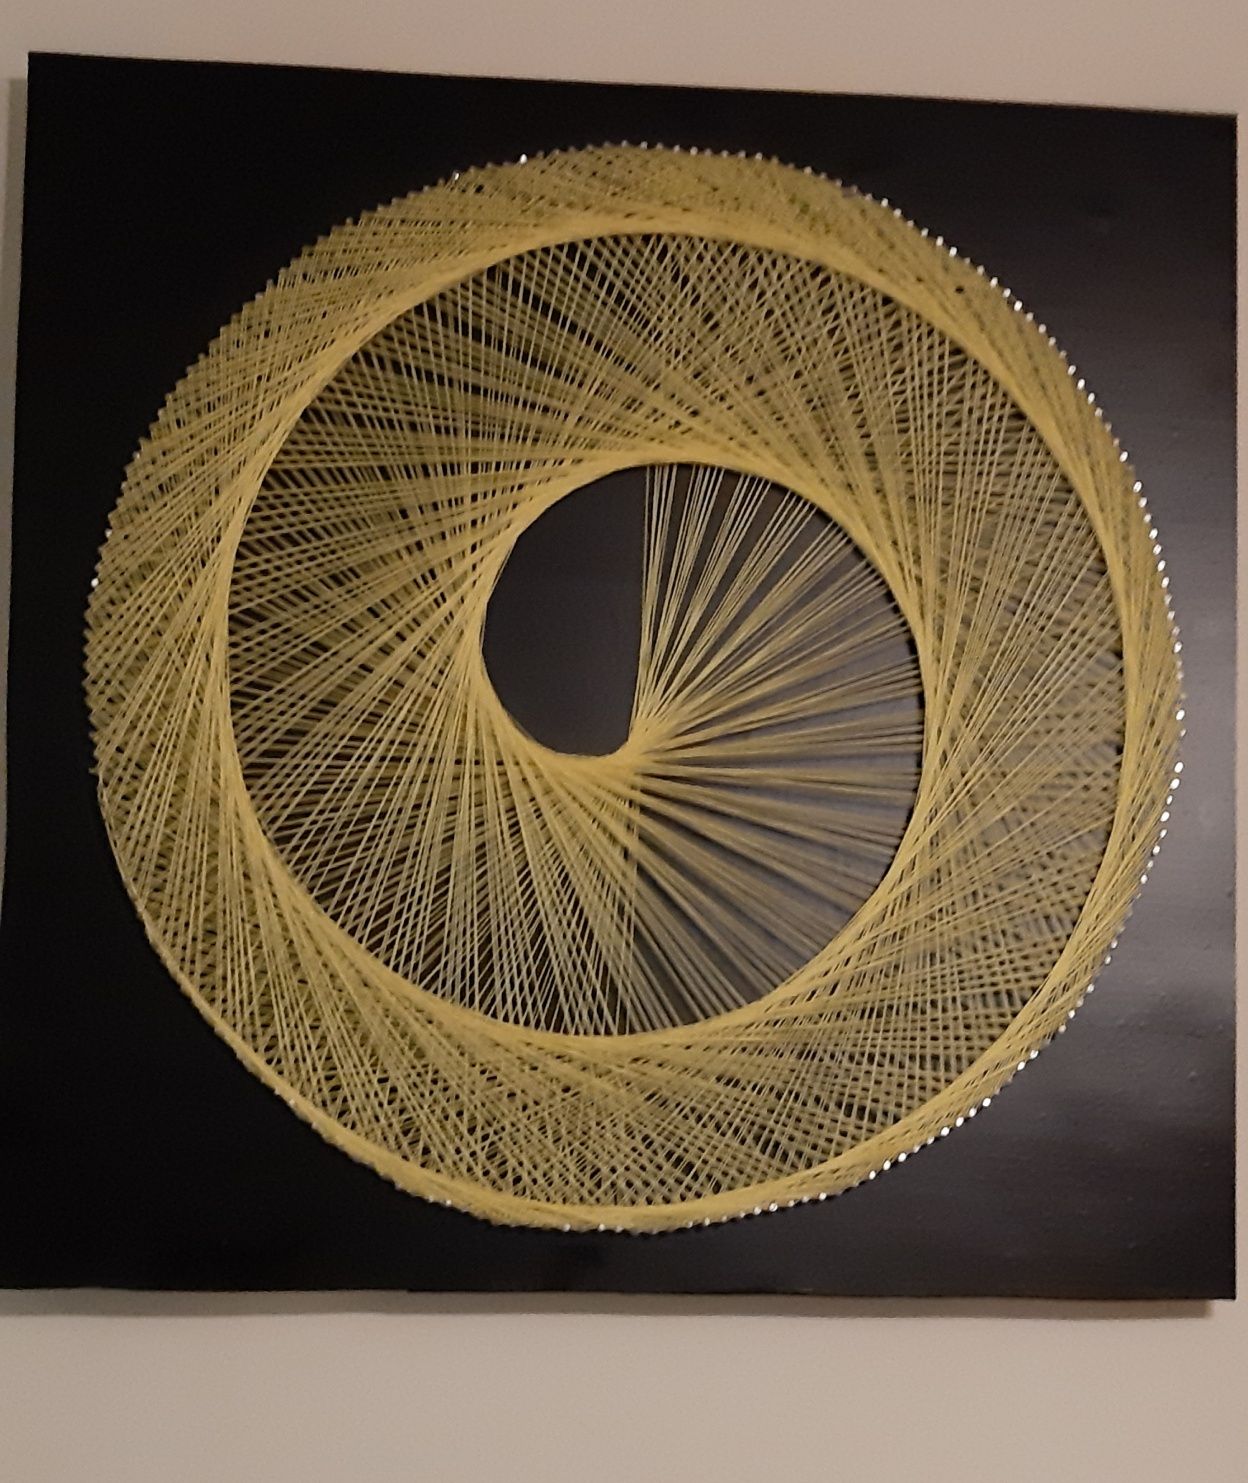 String Art obraz tkany swiecacy w nocy fluo